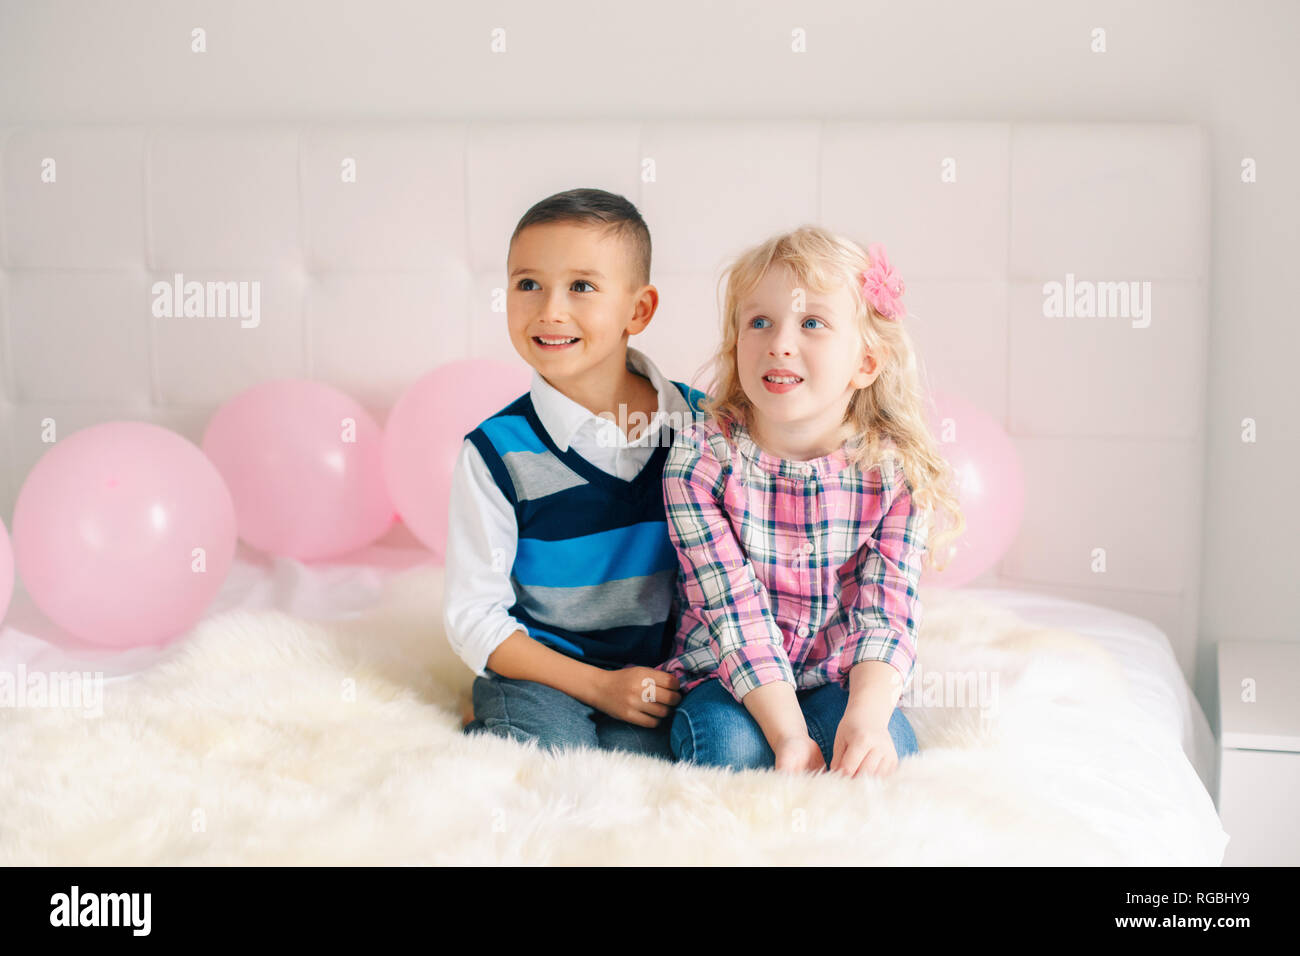 Portrait de deux happy smiling Caucasian blanche surprise funny cute adorable enfants. Boy and girl hugging les uns les autres. L'amour, l'amitié et de plaisir. Valen Banque D'Images